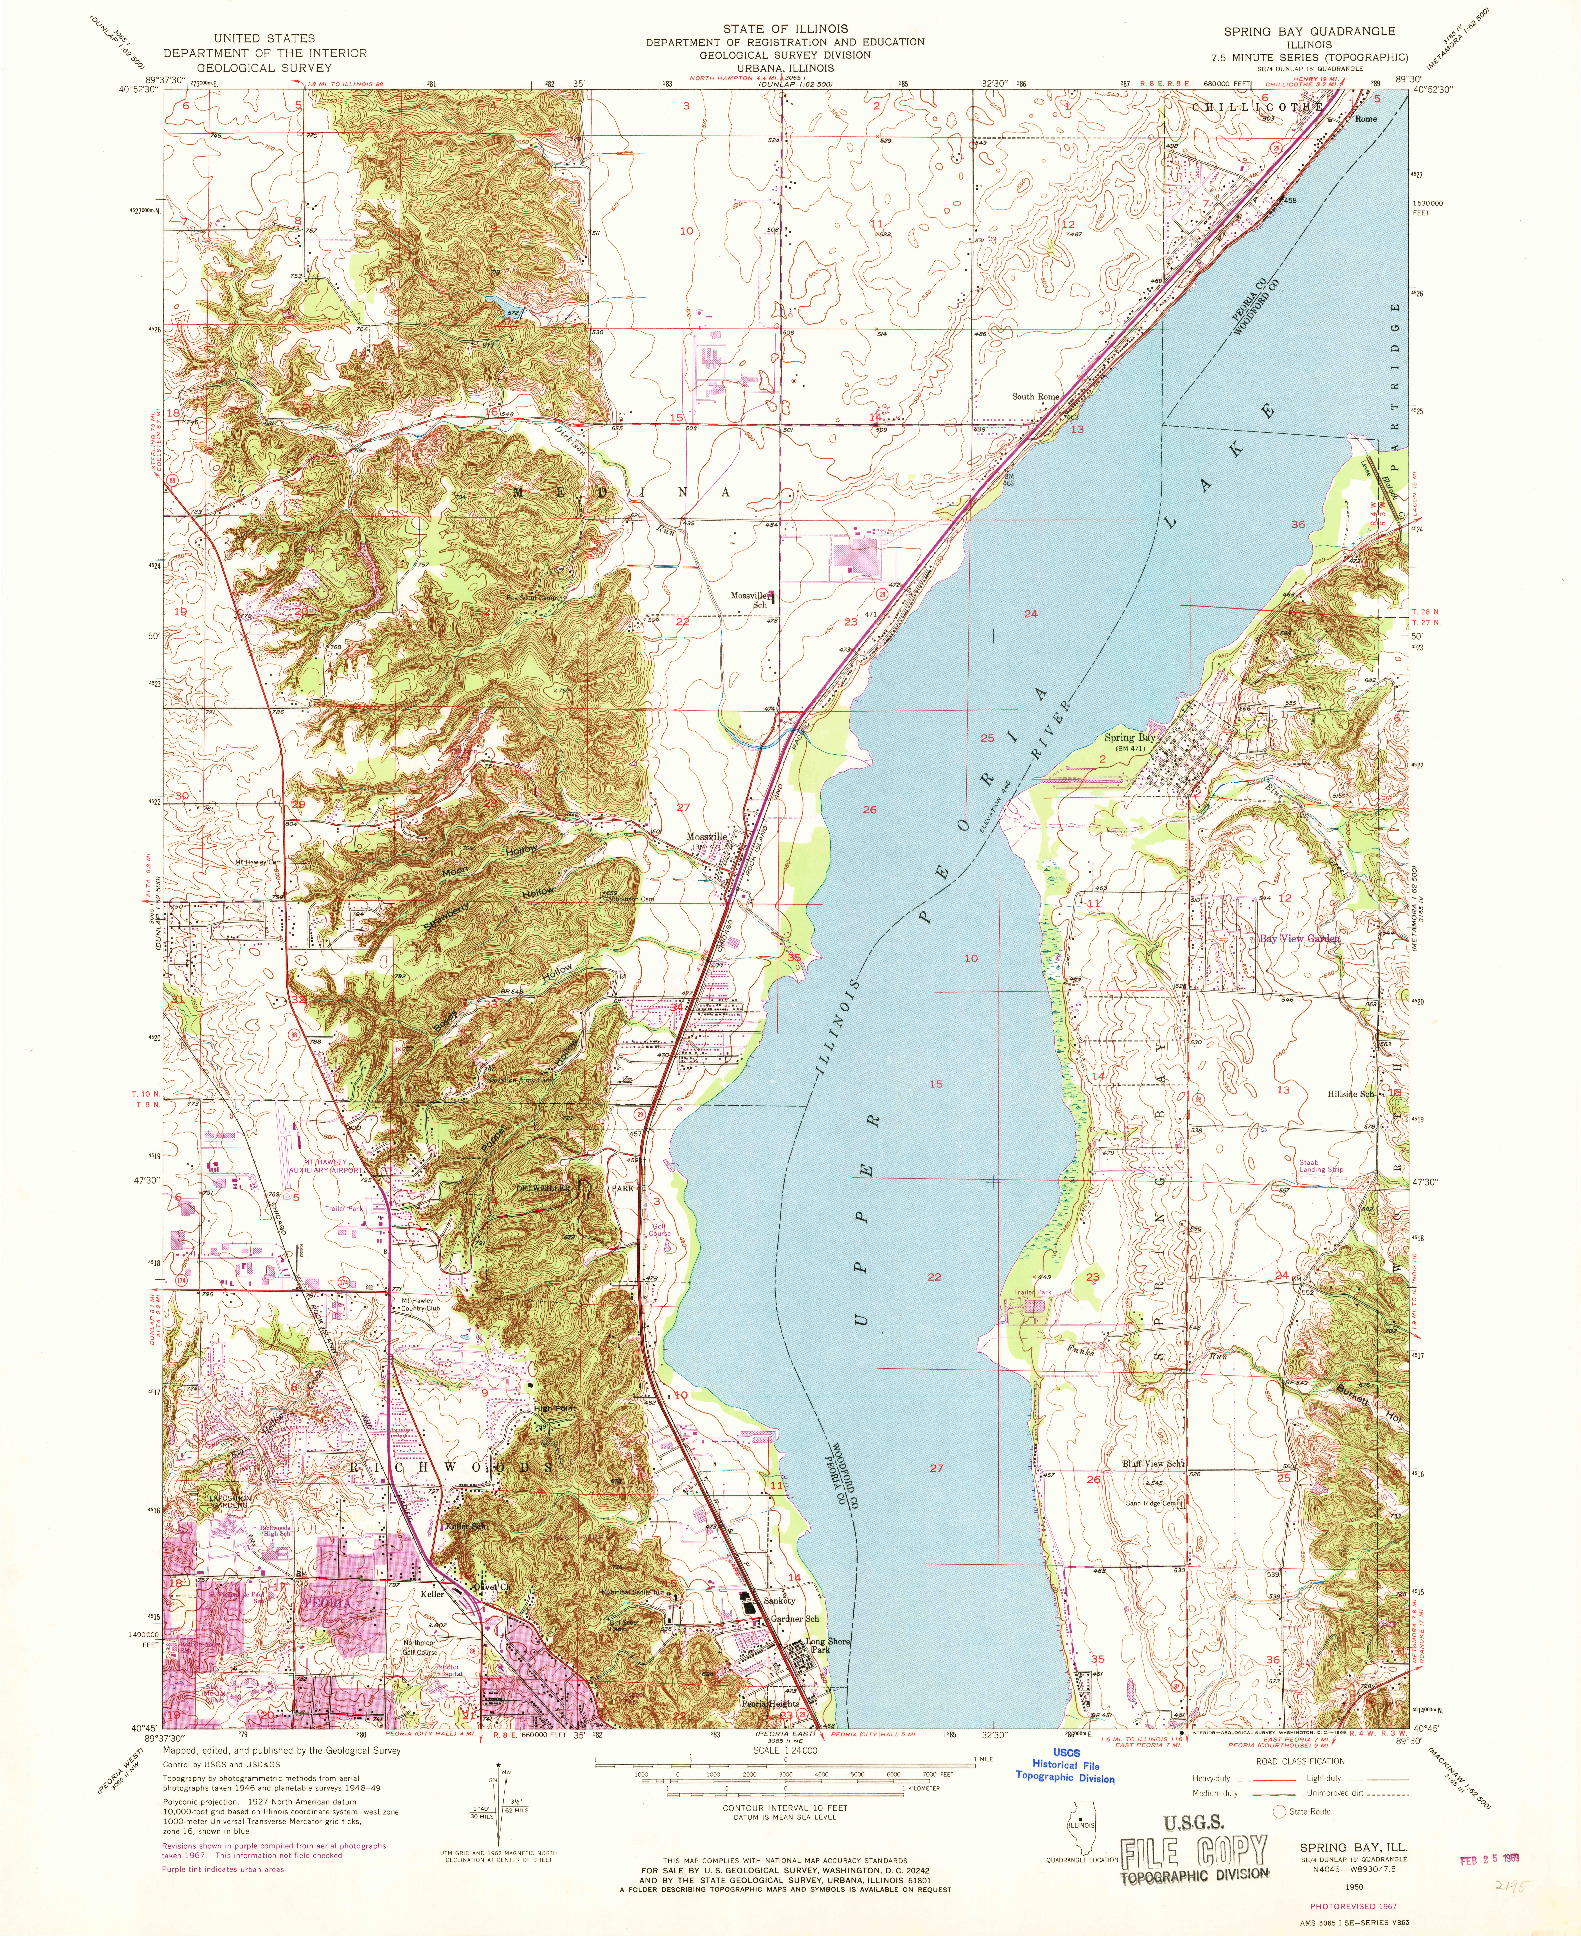 USGS 1:24000-SCALE QUADRANGLE FOR SPRING BAY, IL 1950